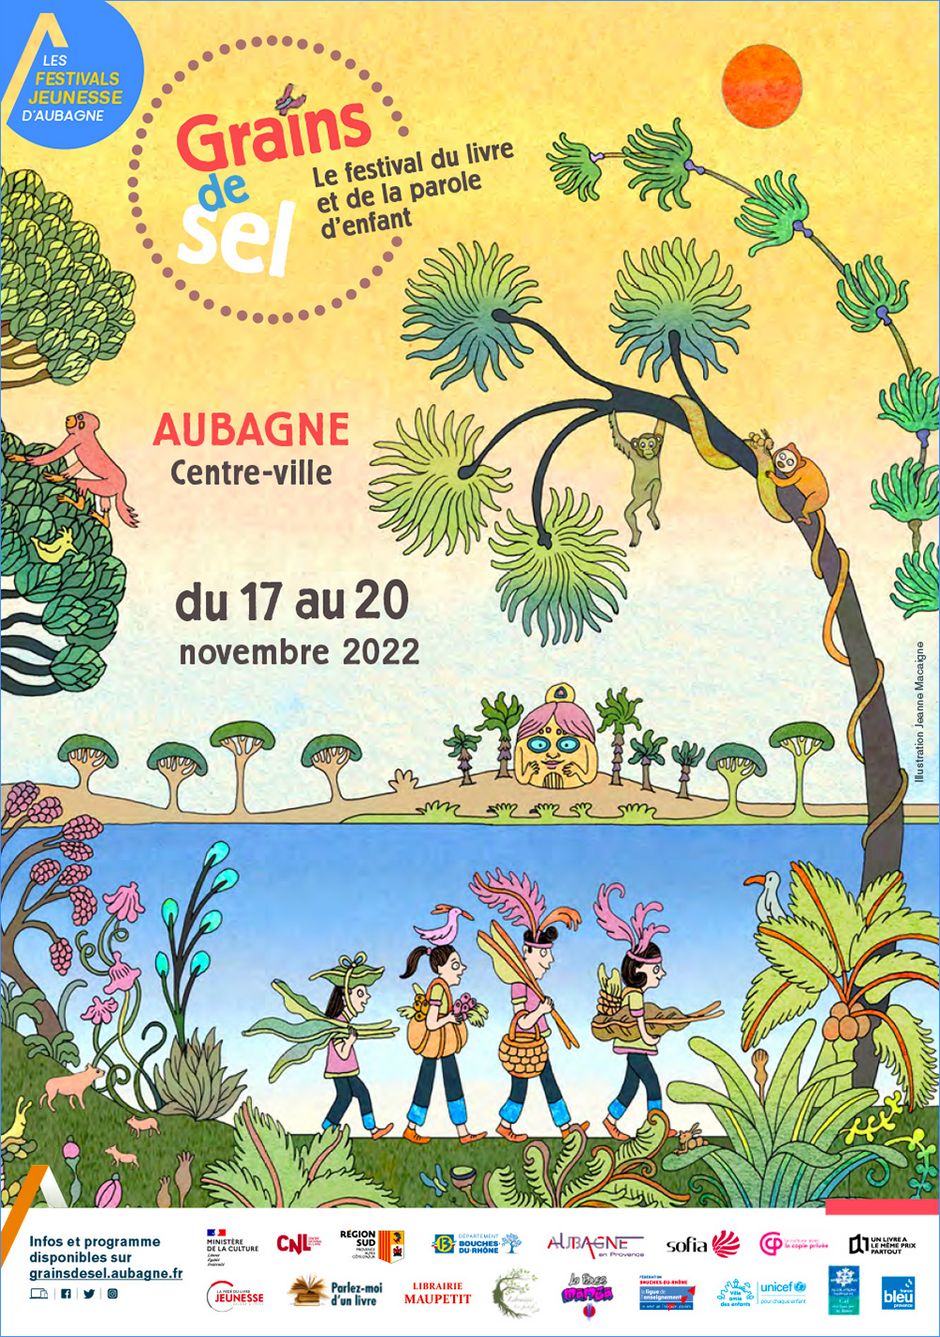 L'affiche du festival Grains de sel 2022 est signée Jeanne Macaigne - Agrandir l'image, .JPG 716 Ko (fenêtre modale)